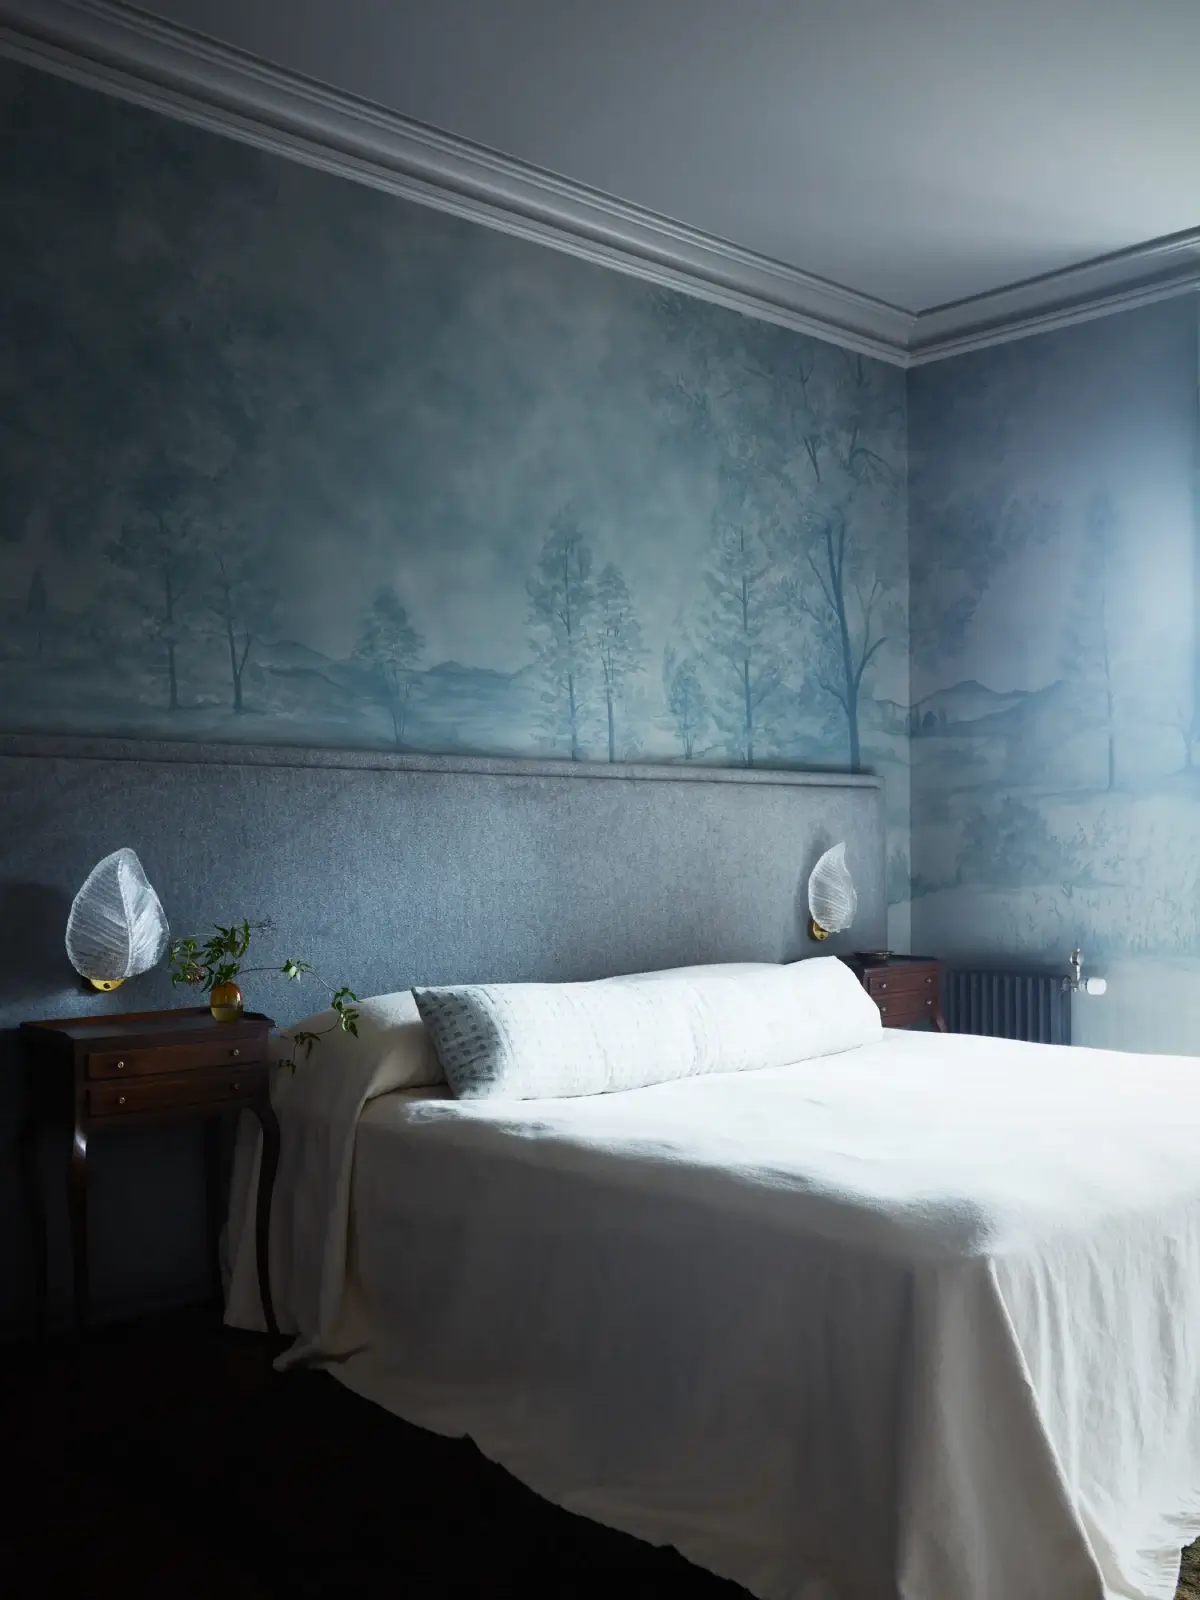 اتاق خواب با رنگ آبی در یک خانه انگلیسی با حال و هوای تاریخی